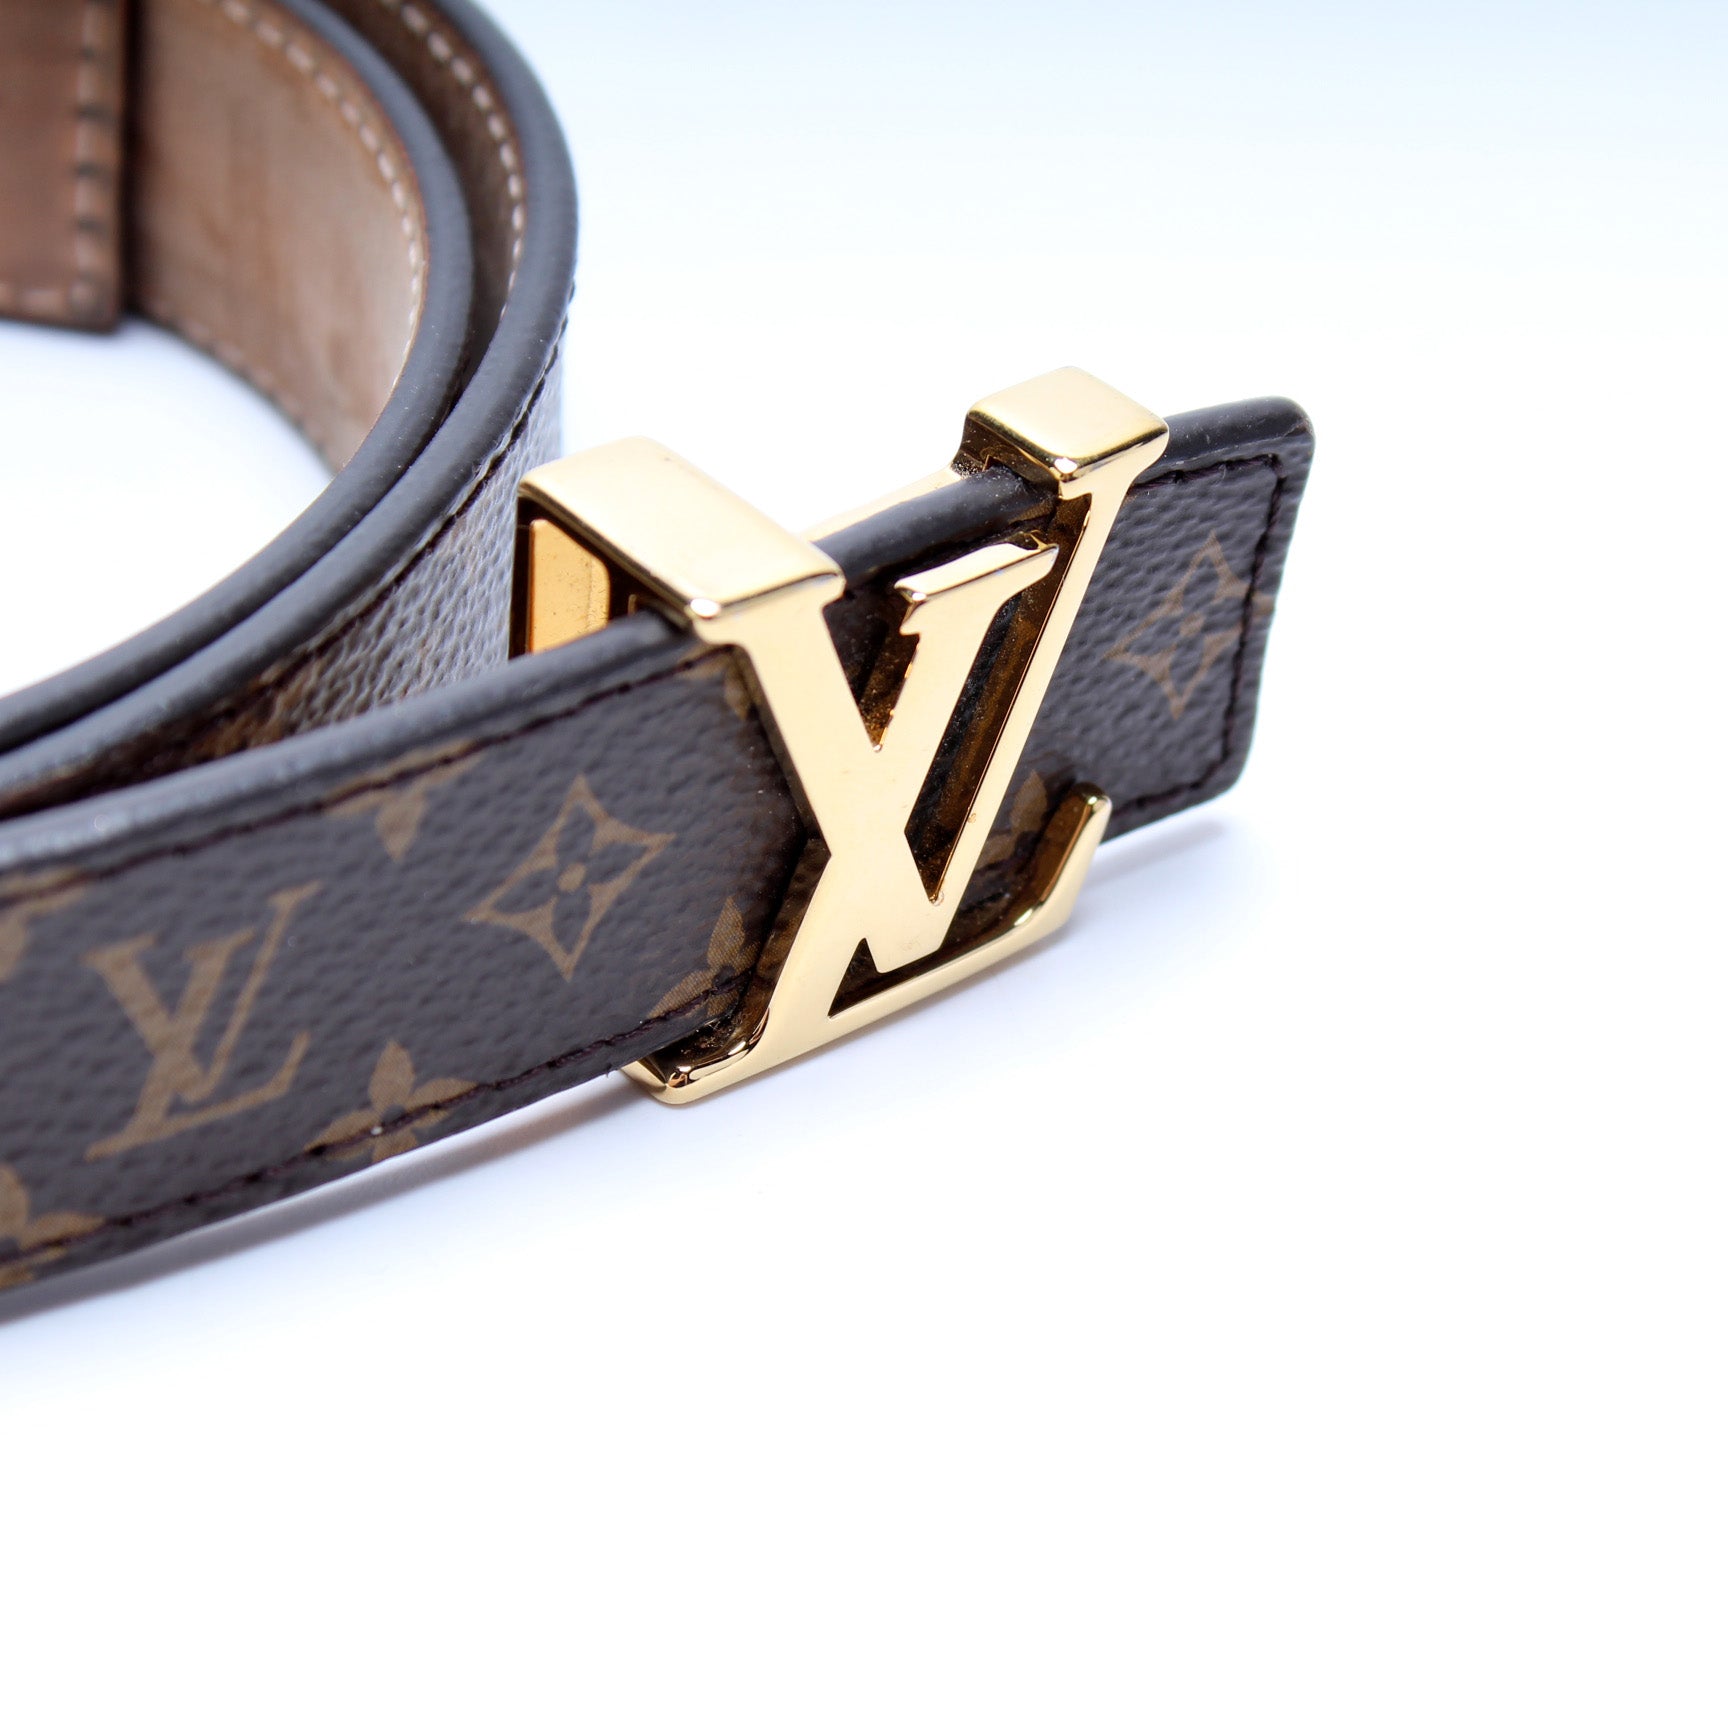 Louis Vuitton, Accessories, Lv Monogram Mini 25mm Belt Size 85